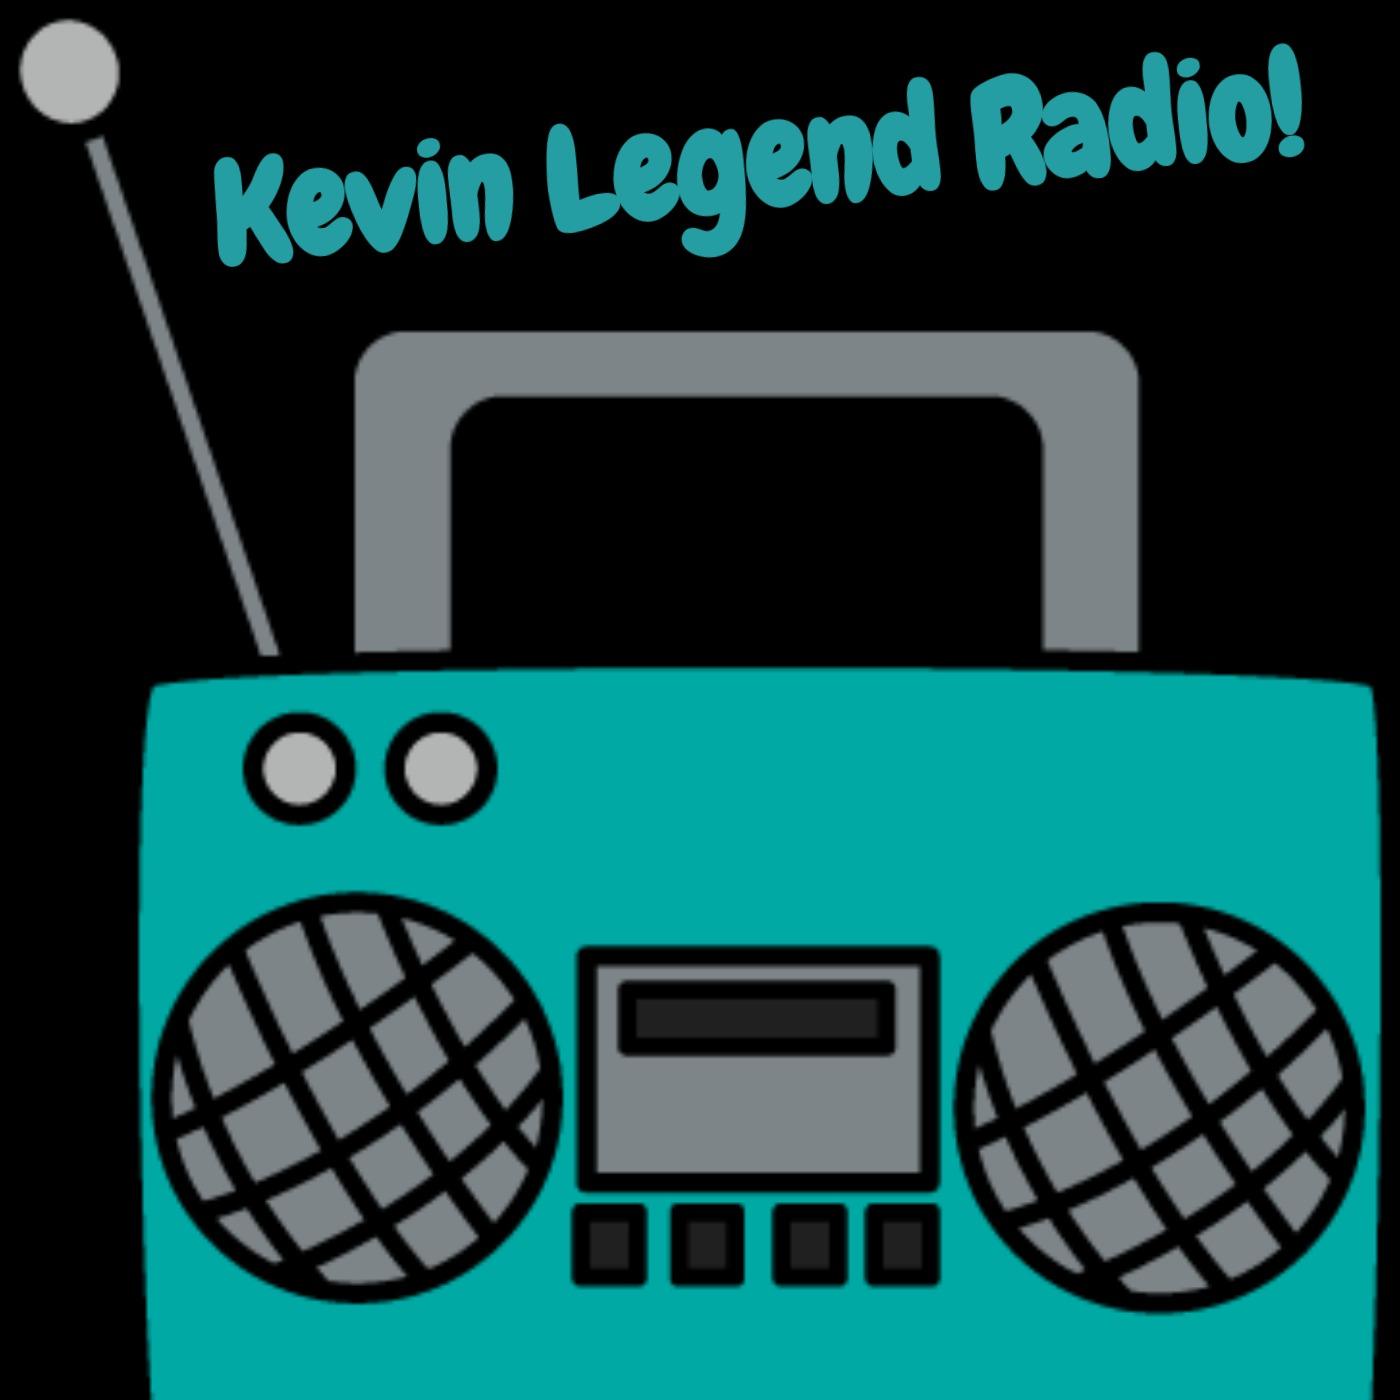 Kevin Legend Radio - Episode 1